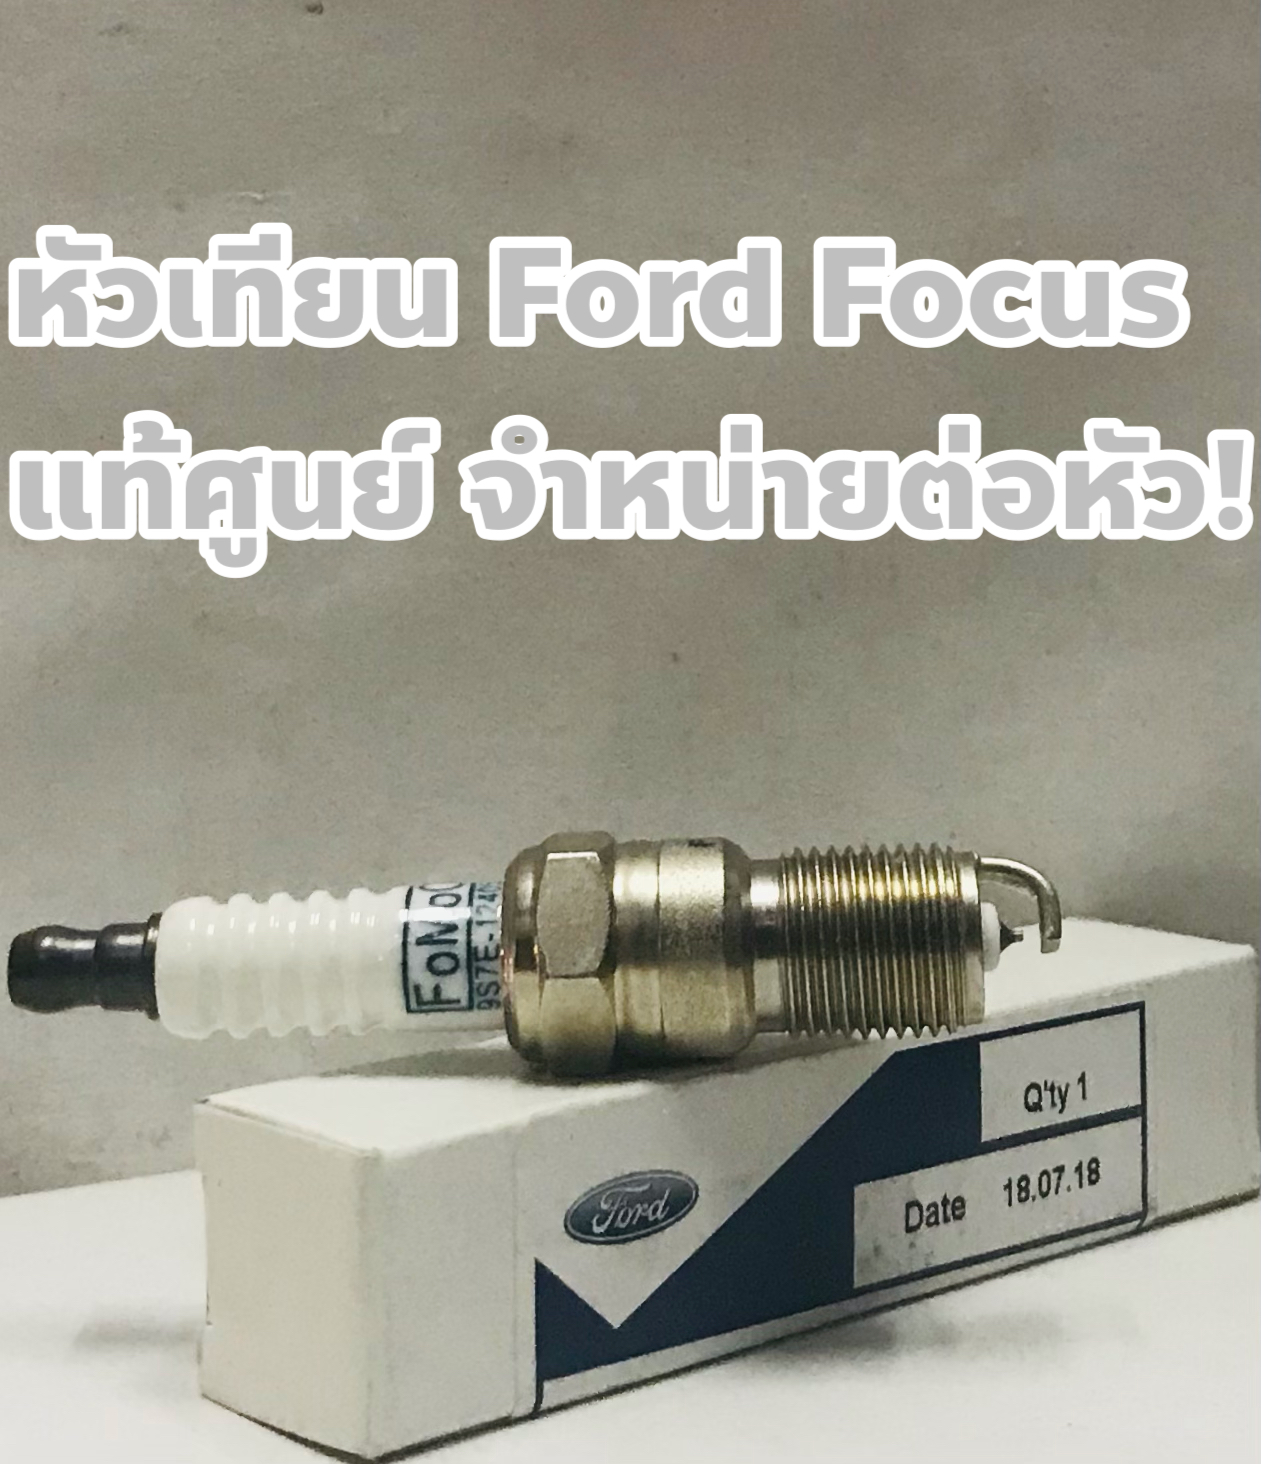 Ford หัวเทียน Ford Focus 1.0, 1.5, 1.8, 2.0 แท้เบิกศูนย์ ชนิดหัวเข็ม จำหน่ายต่อหัว !